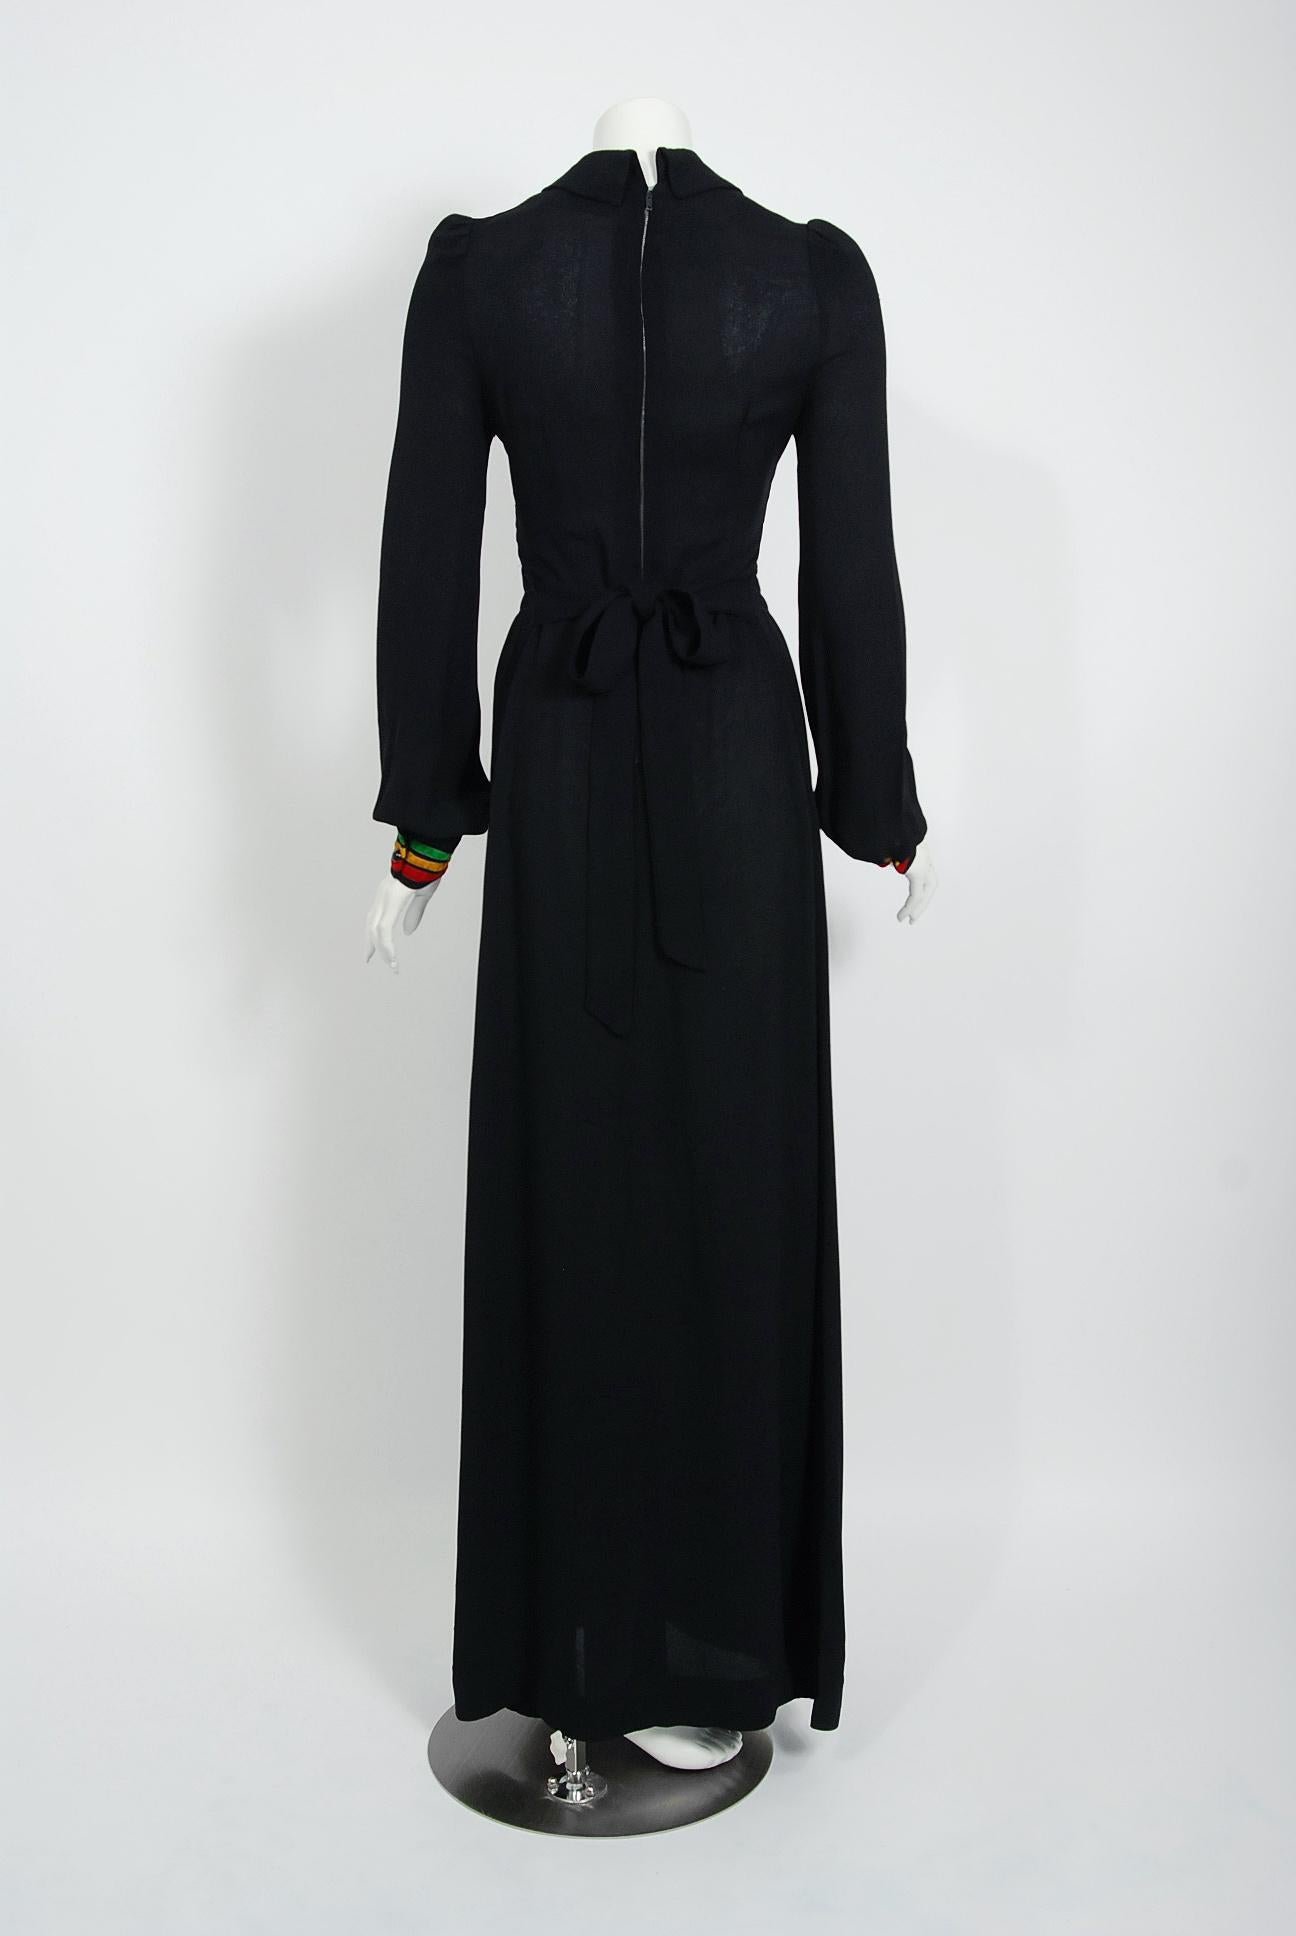 1975 Ossie Clark for Radley Traffic-Light Stripe Black Crepe Smocked Maxi Dress  3